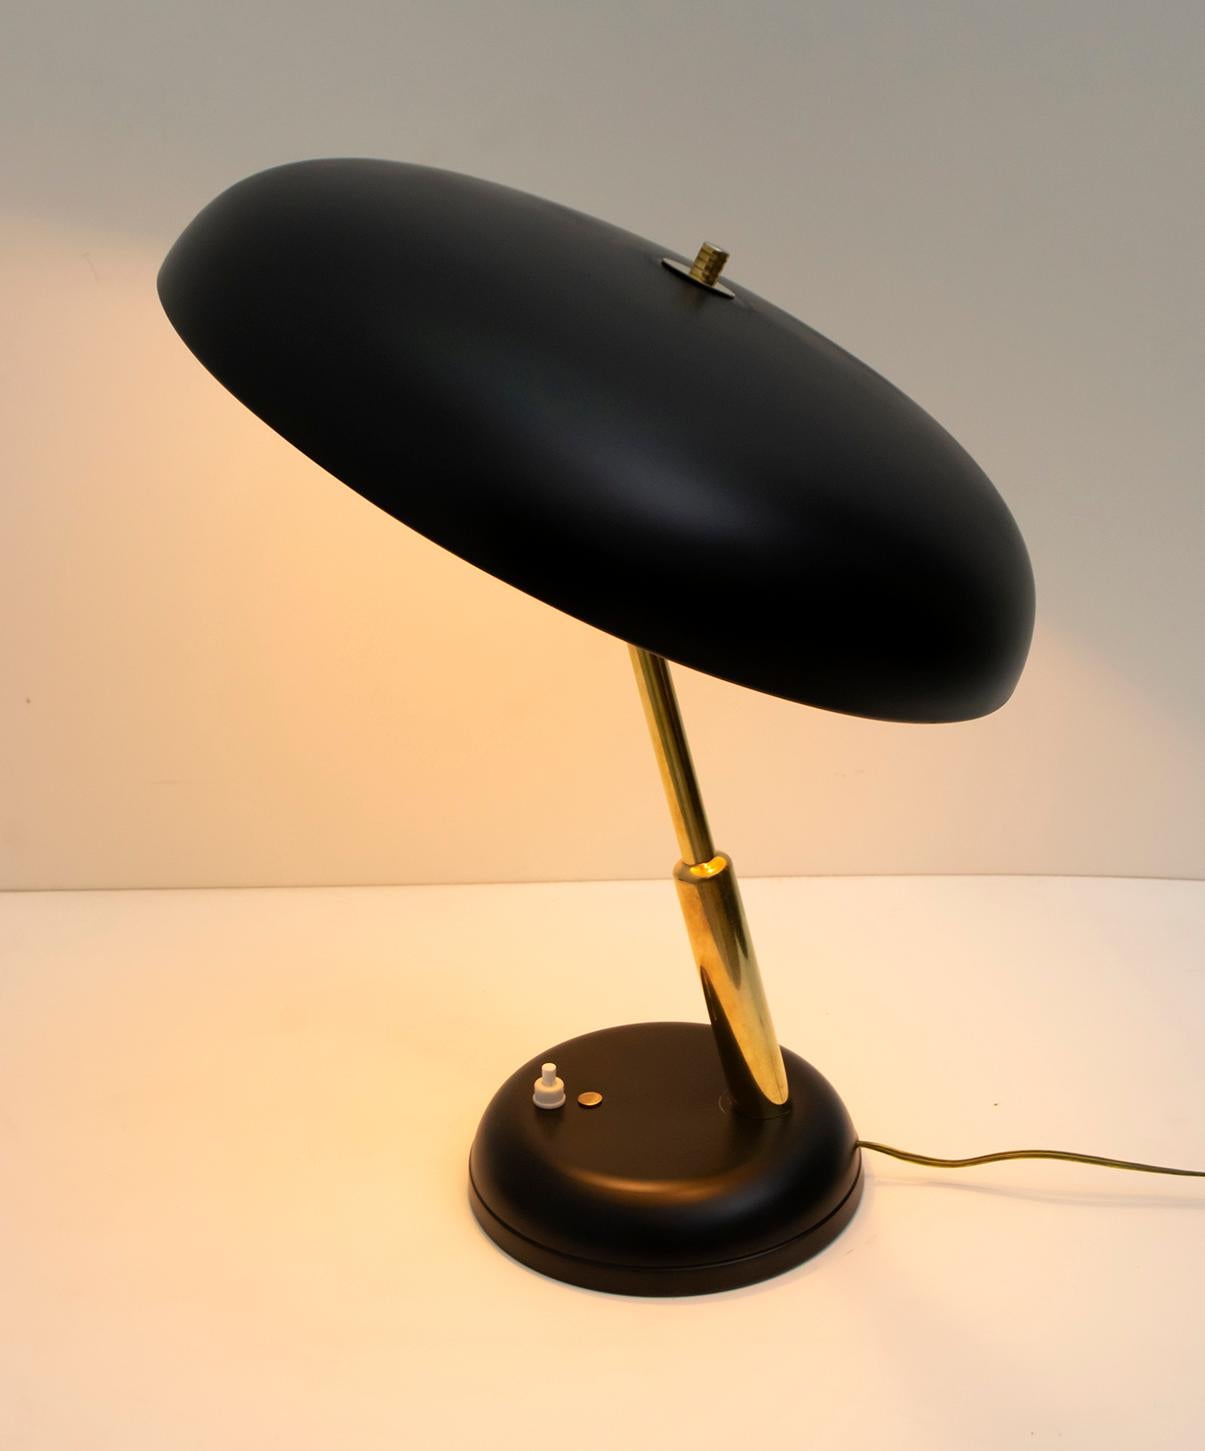 Élégante lampe ministérielle en laiton et aluminium laqué noir, années 1950. La base ronde à bord biseauté a un diamètre de Ø17 cm, un chapeau en forme de champignon de Ø30 cm, en aluminium laqué noir, la tige en laiton. Hauteur 40 cm. La lampe